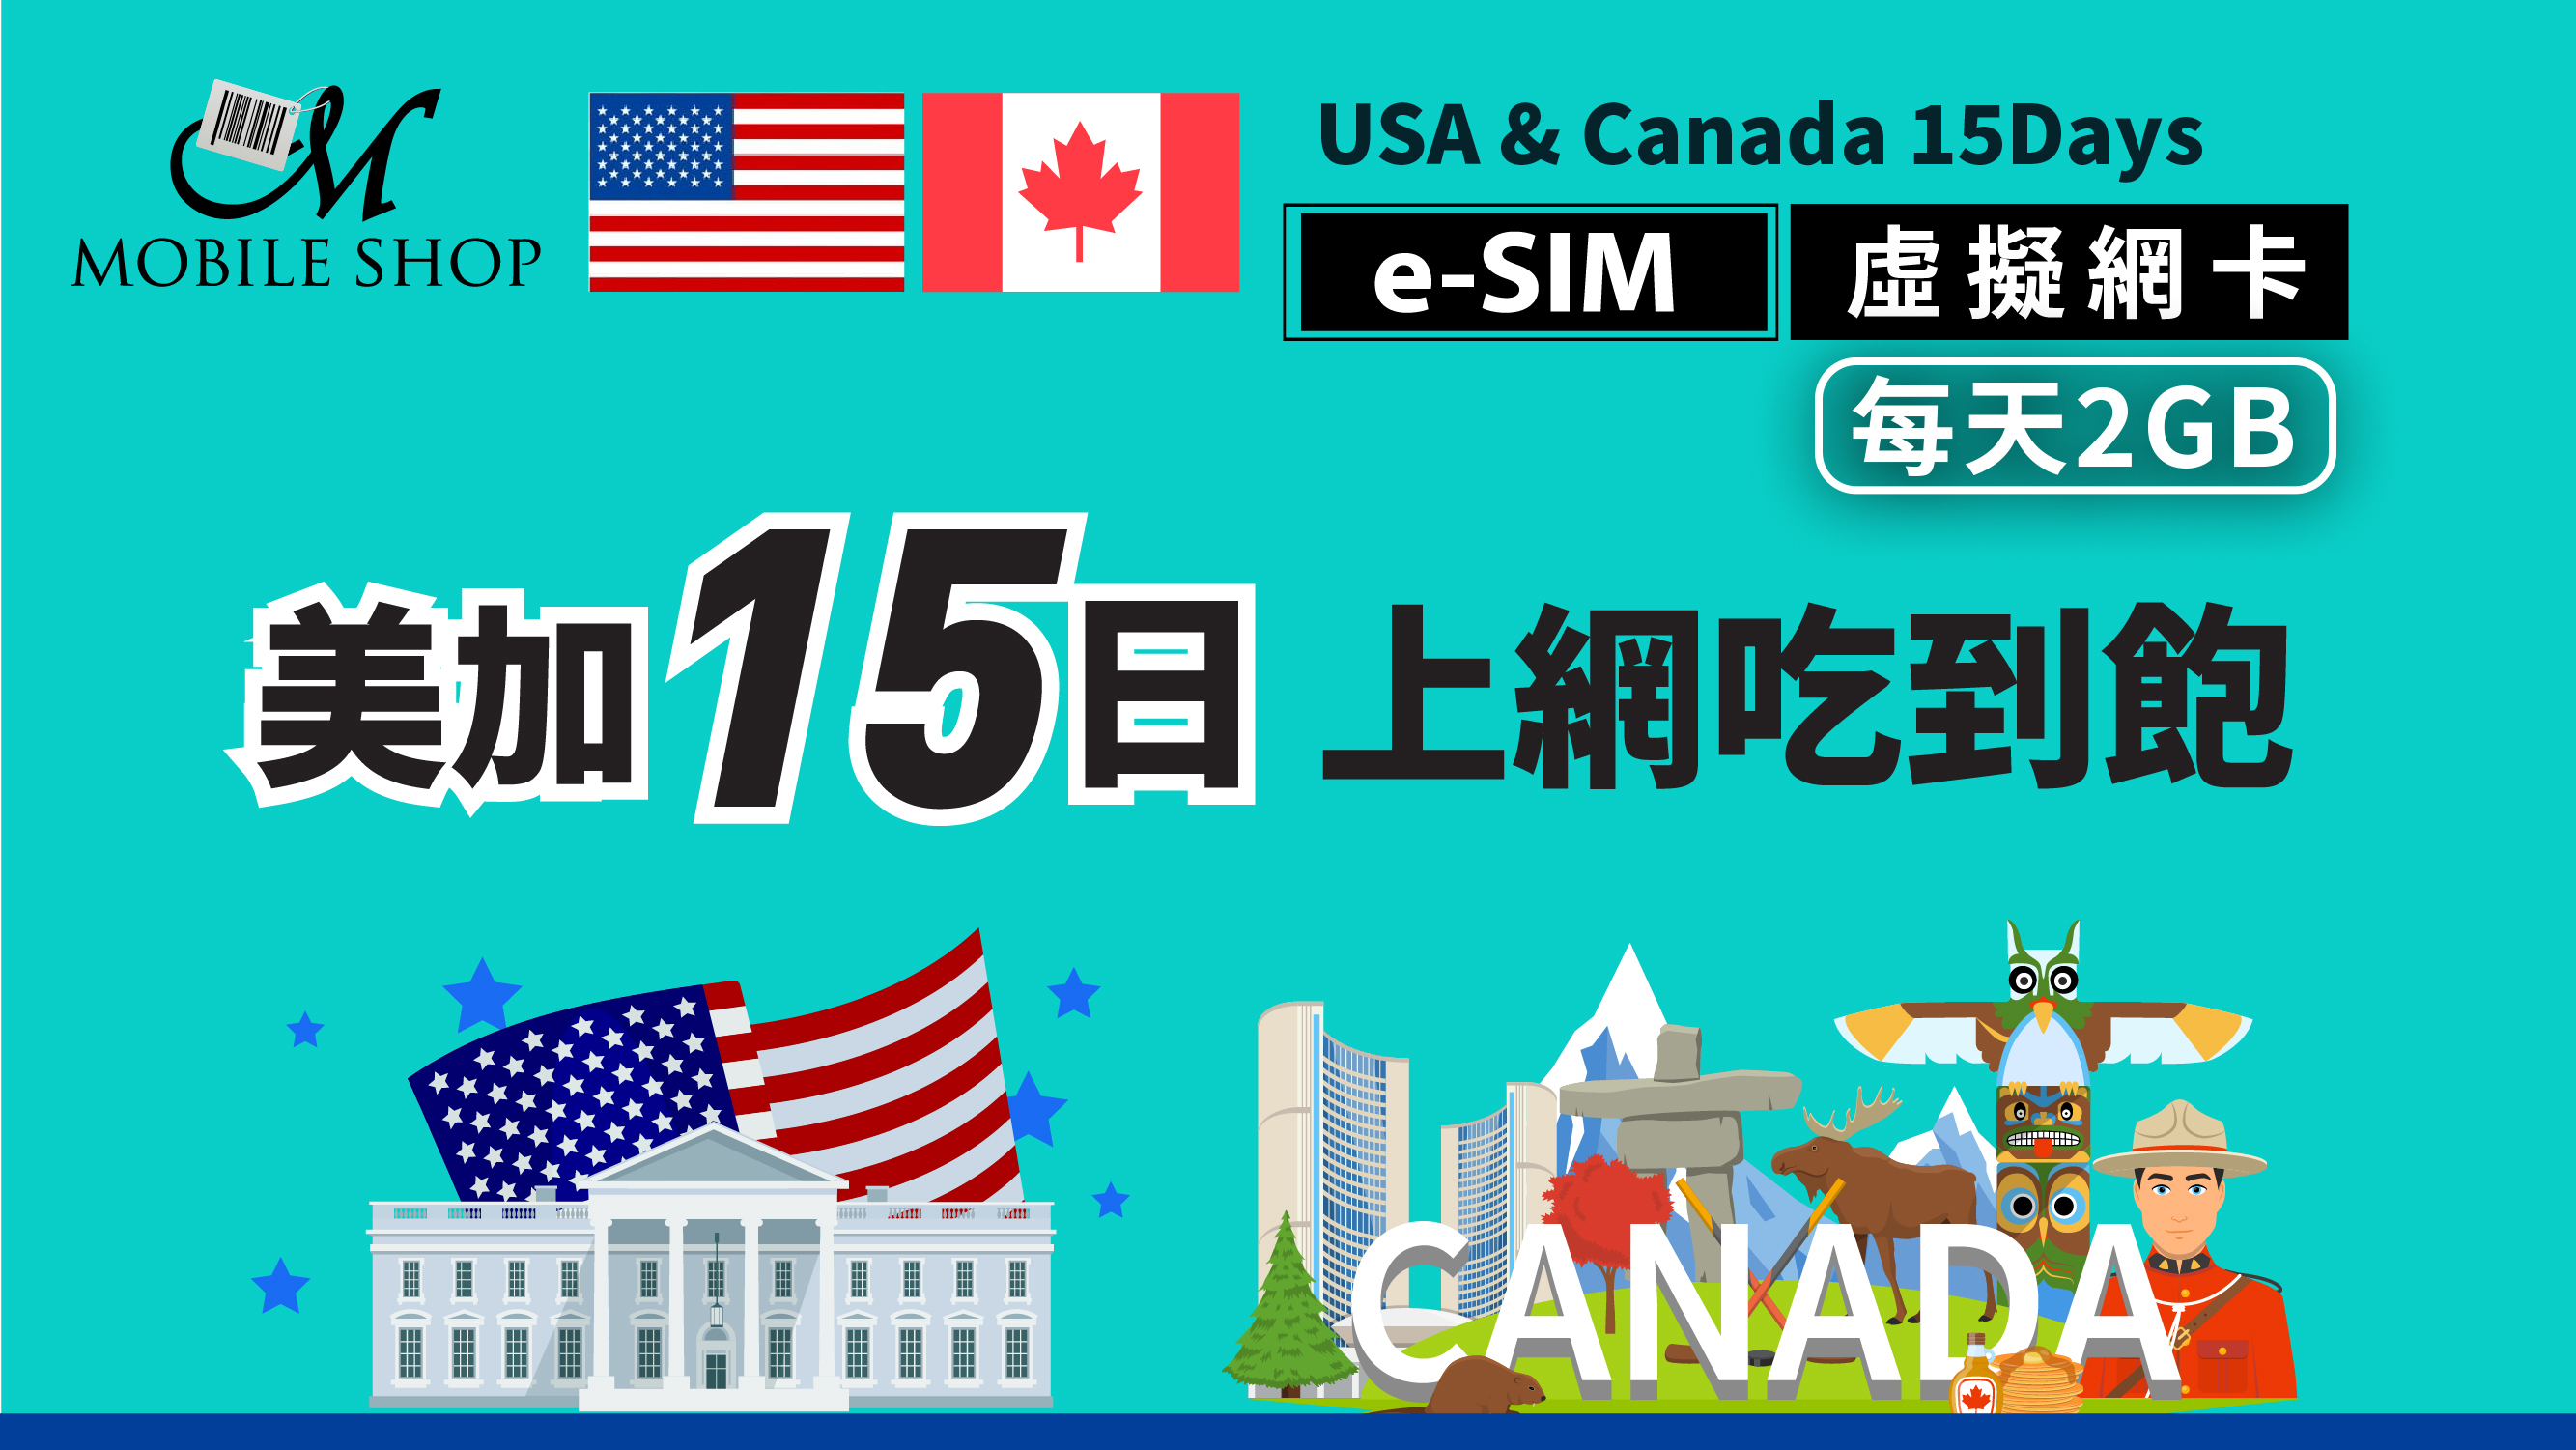 e-SIM_USA&Canada 15Days/2GB per day unlimited data